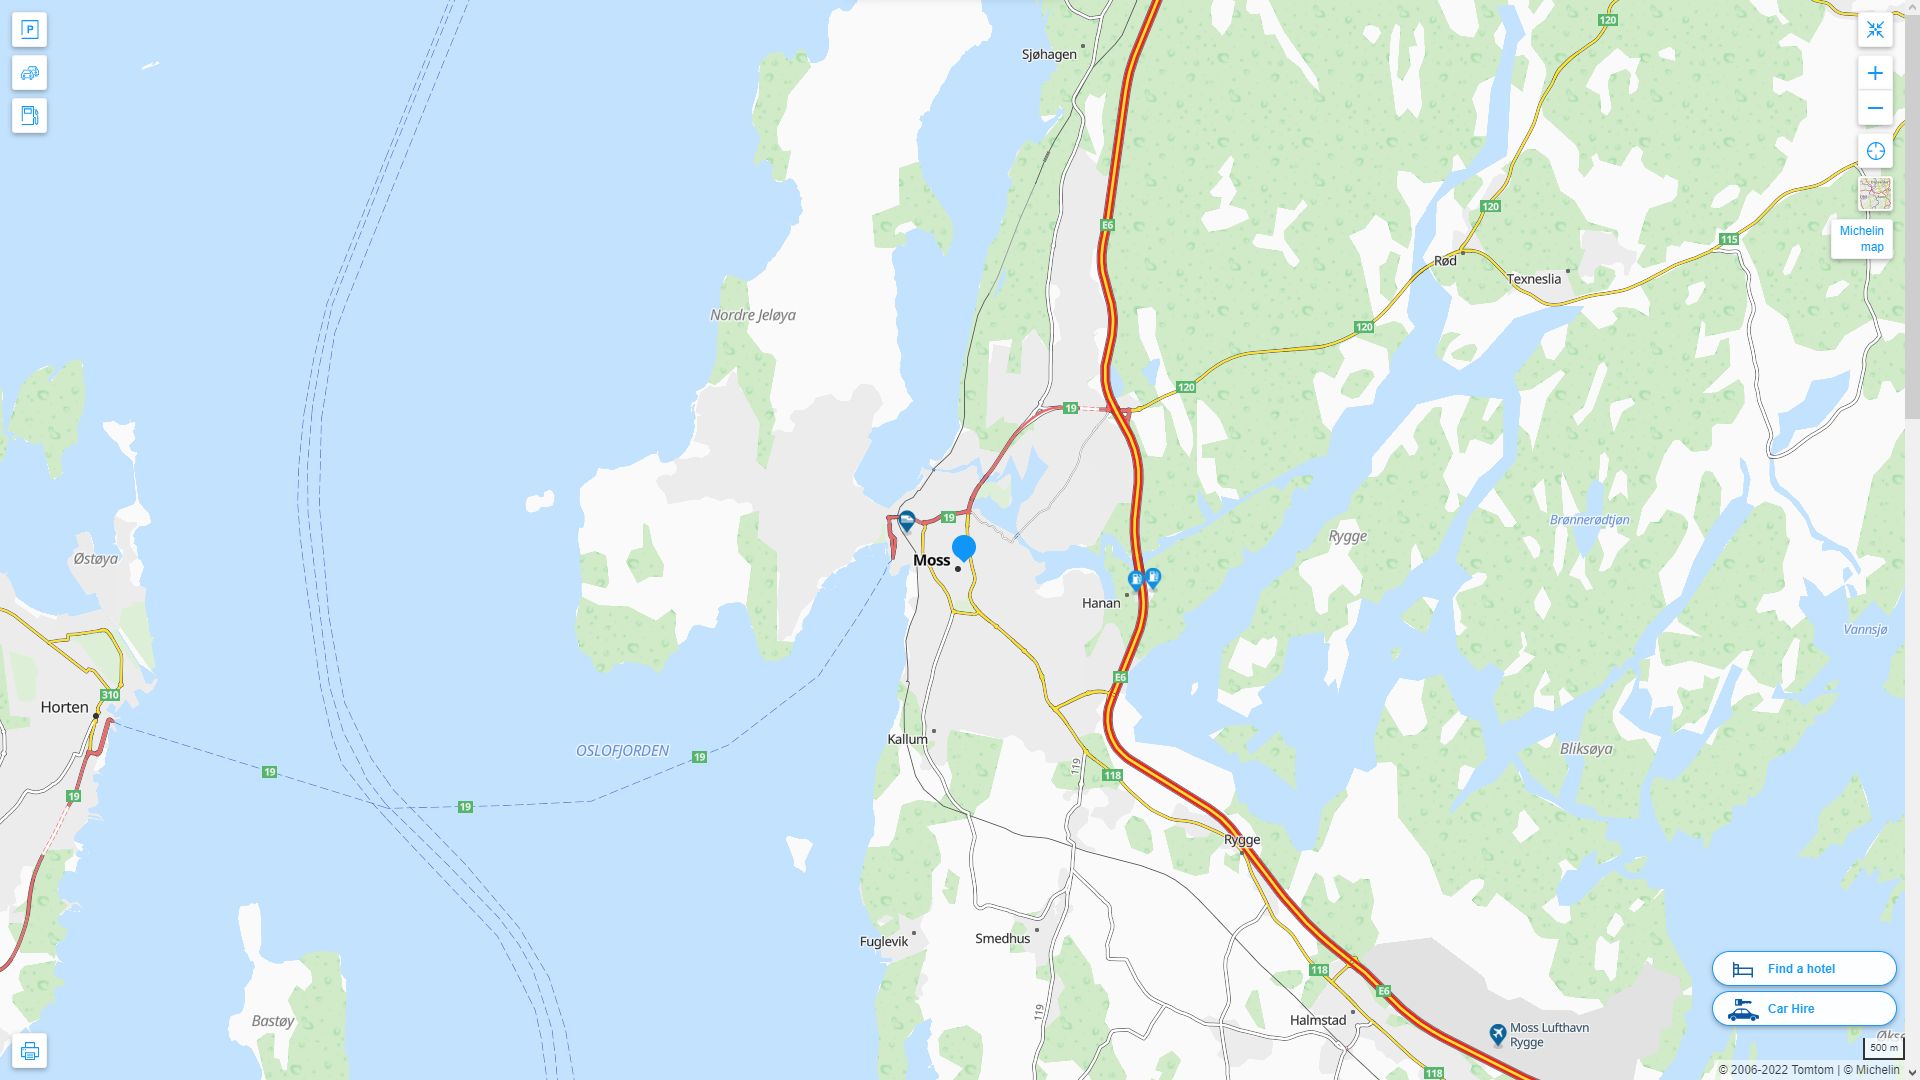 Moss Norvege Autoroute et carte routiere